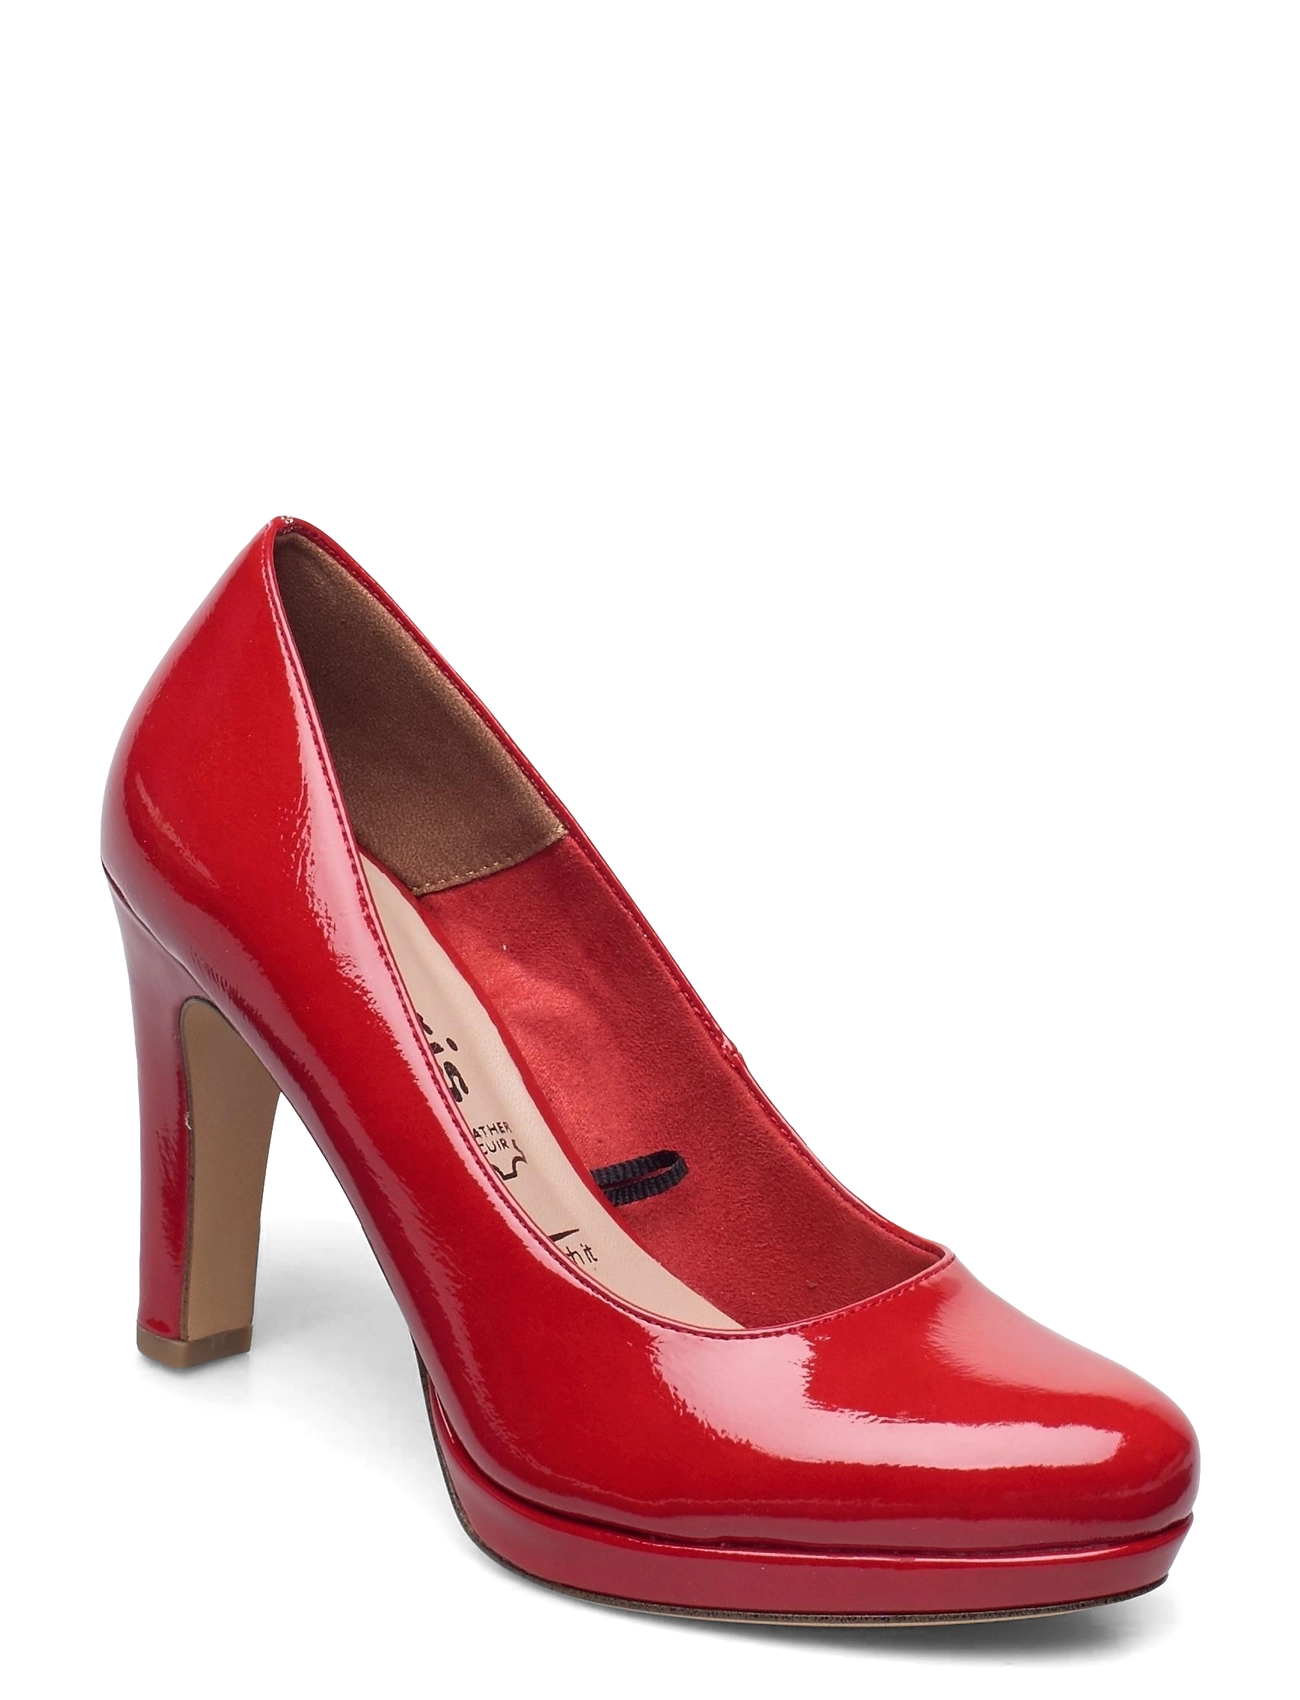 Tamaris pumps – Woms Court Shoe Shoes Heels Pumps Classic Rød til dame i Sort - Pashion.dk